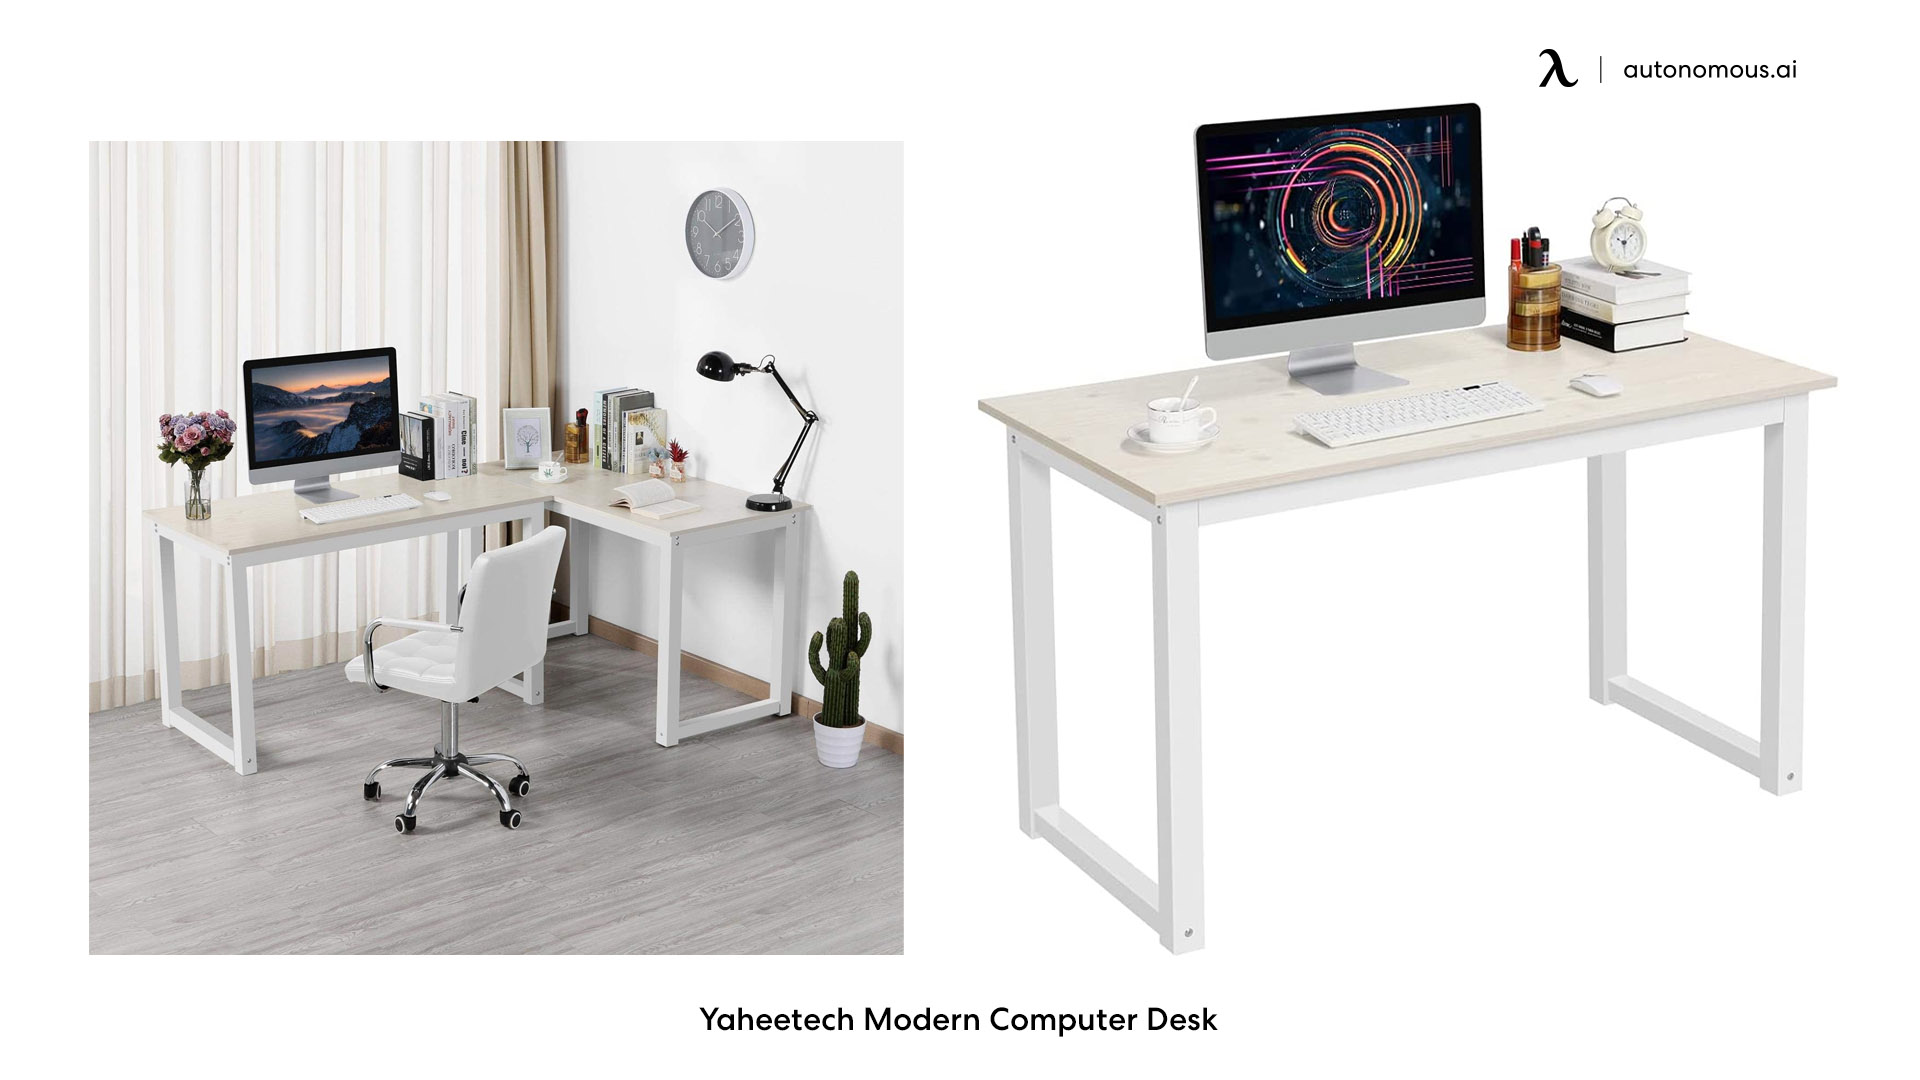 Yaheetech Modern Computer Desk